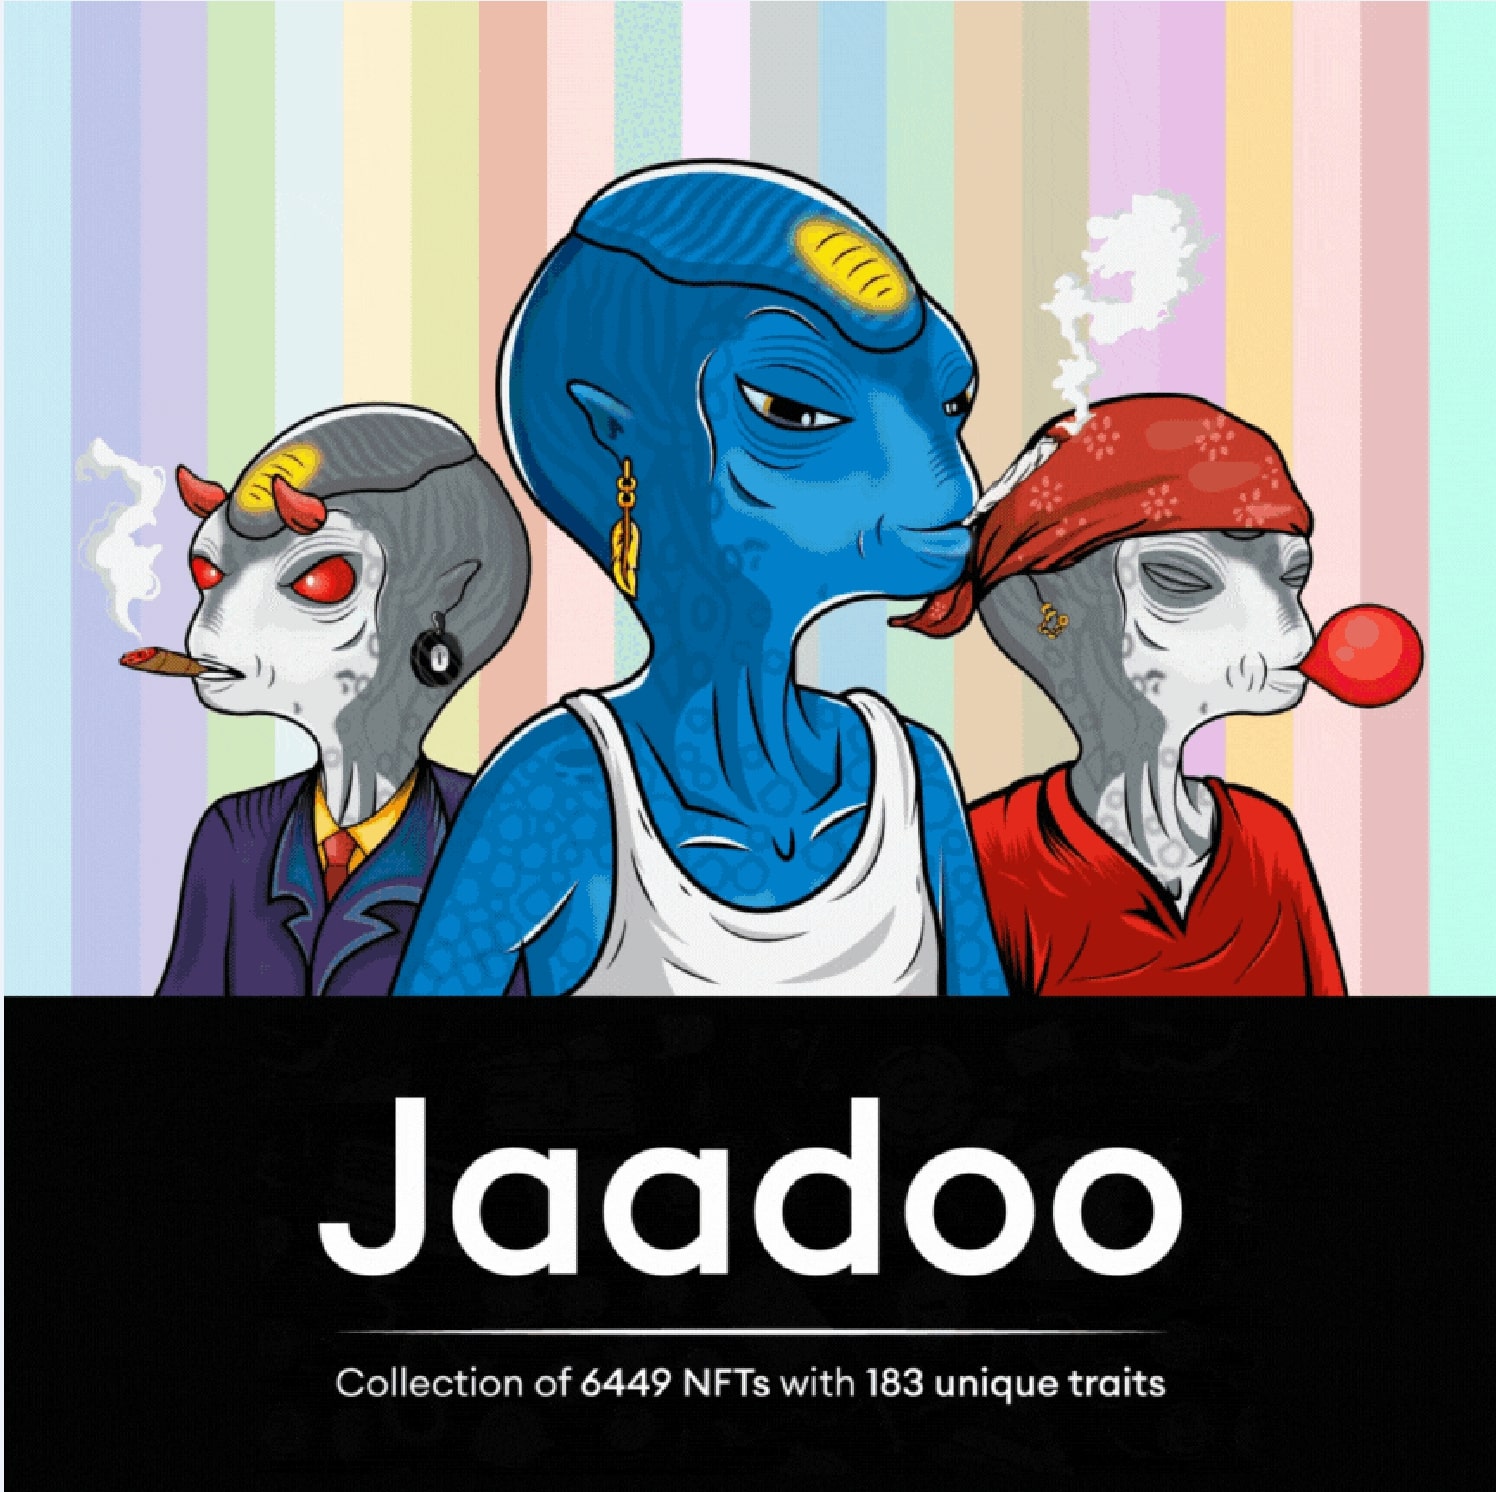 NFT drop Jaadoo